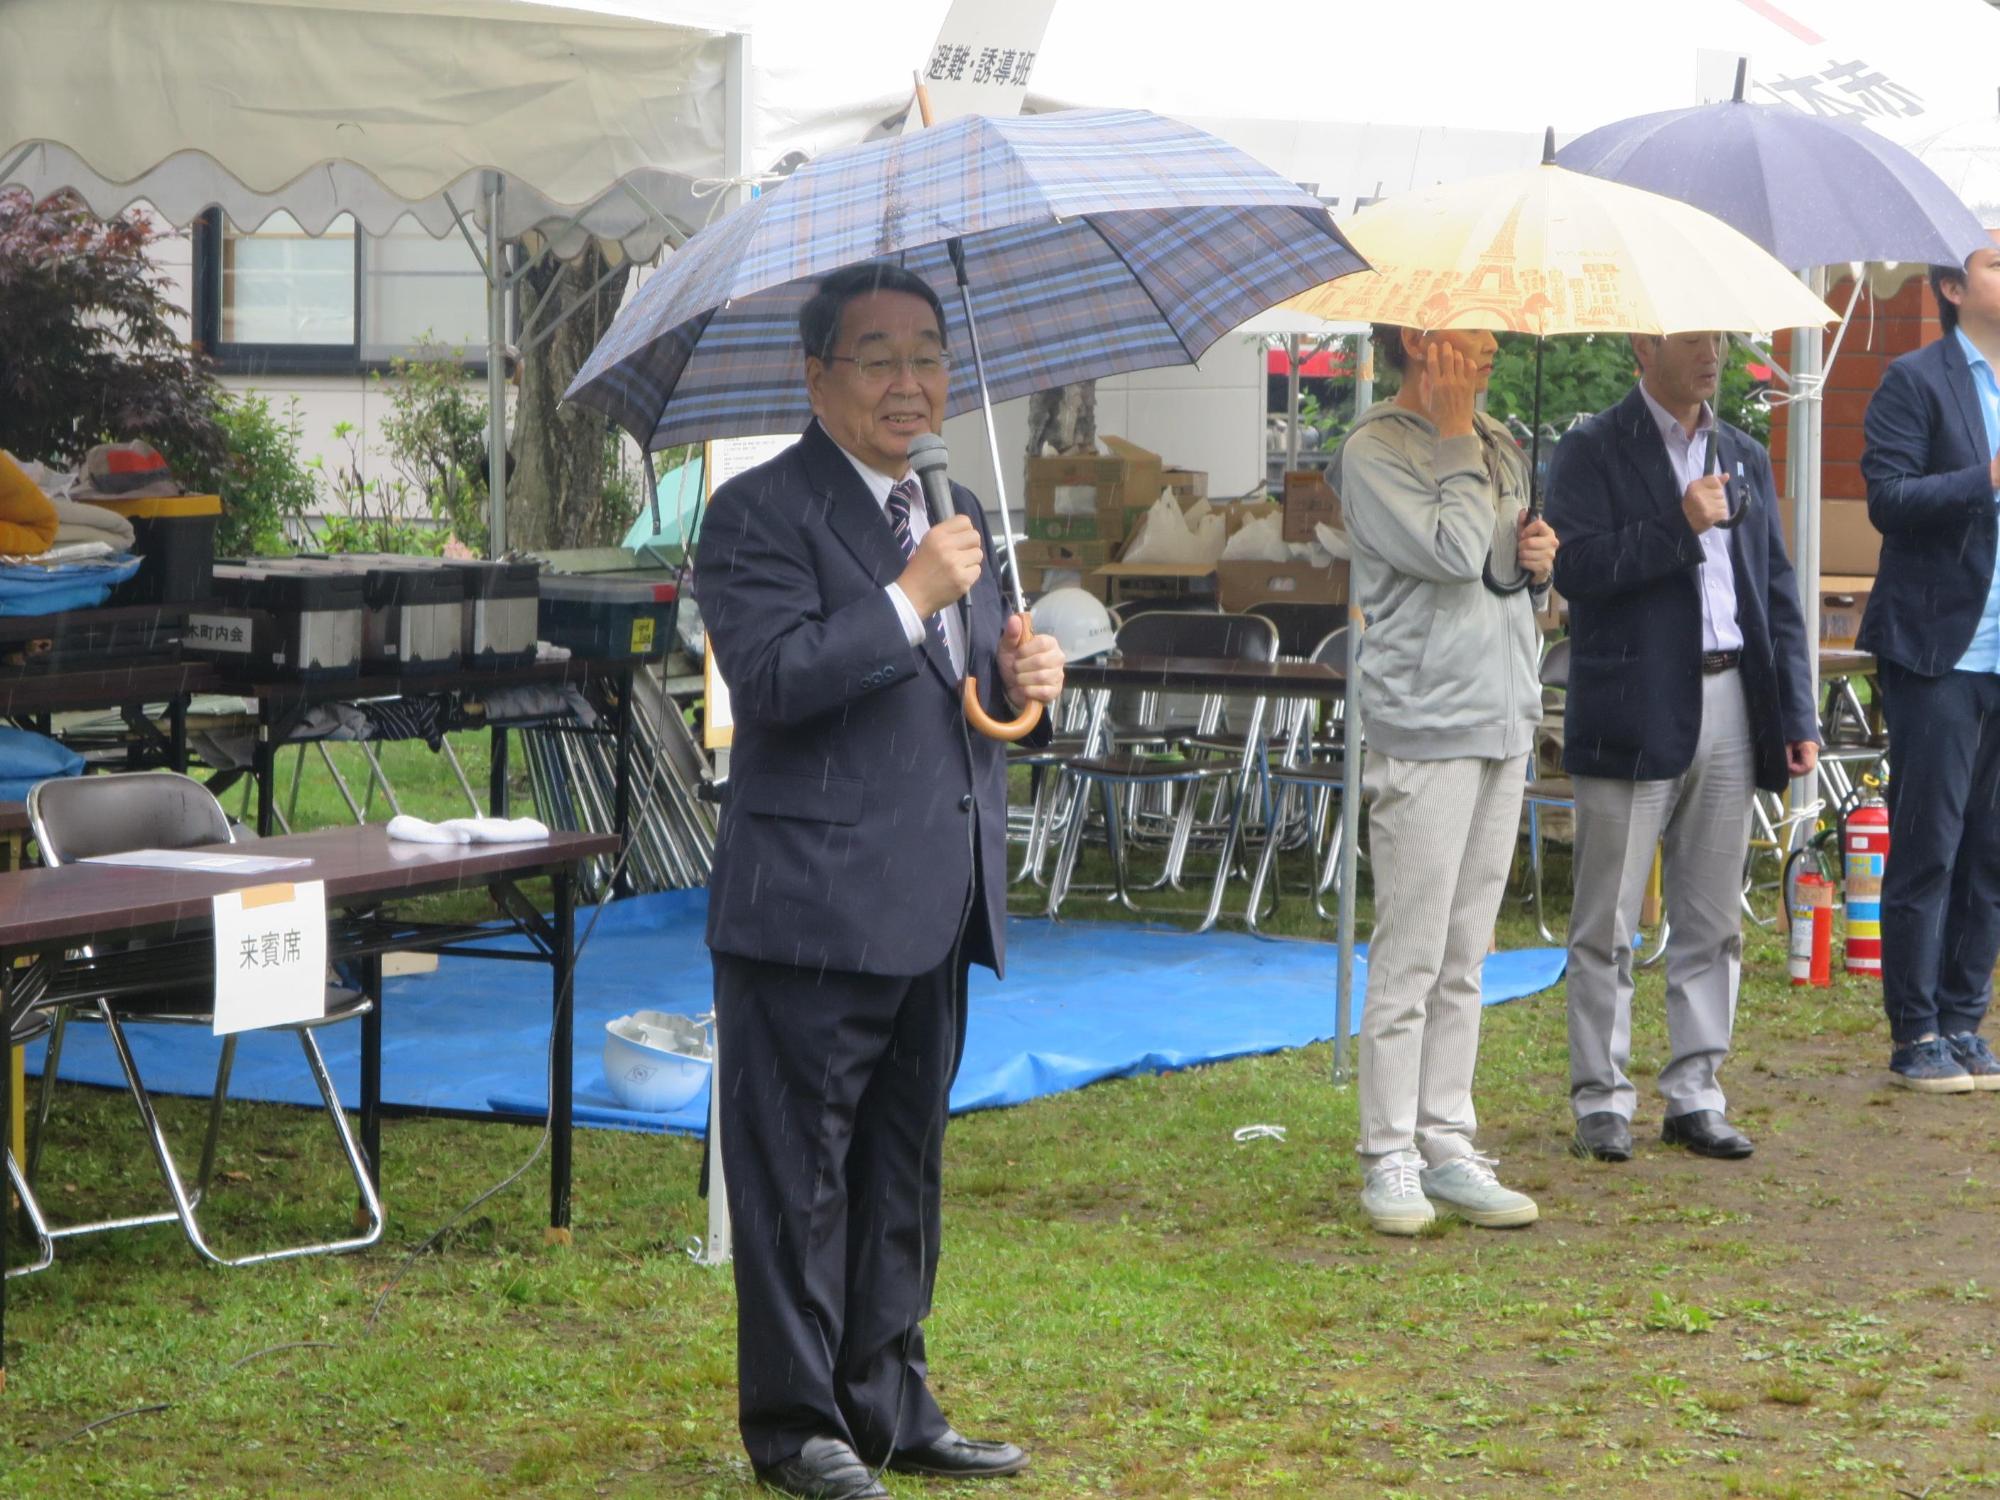 雨の中、傘を差しながら挨拶をする原田市長の写真